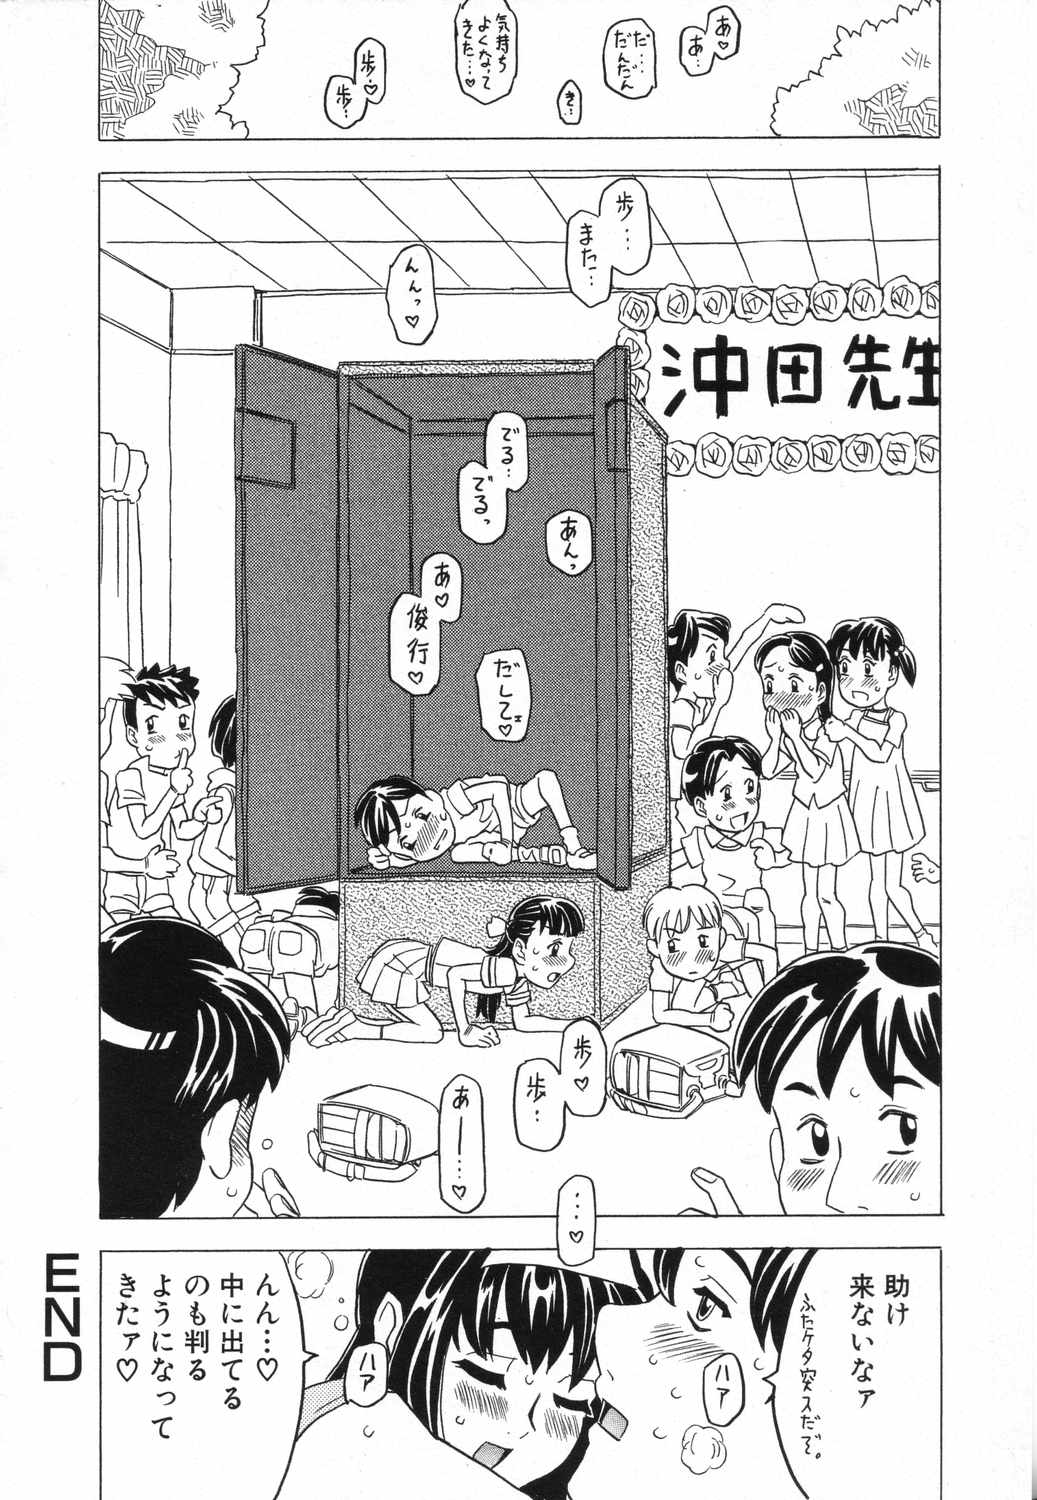 [Anthology] LOCO vol.5 Aki no Omorashi Musume Tokushuu page 23 full